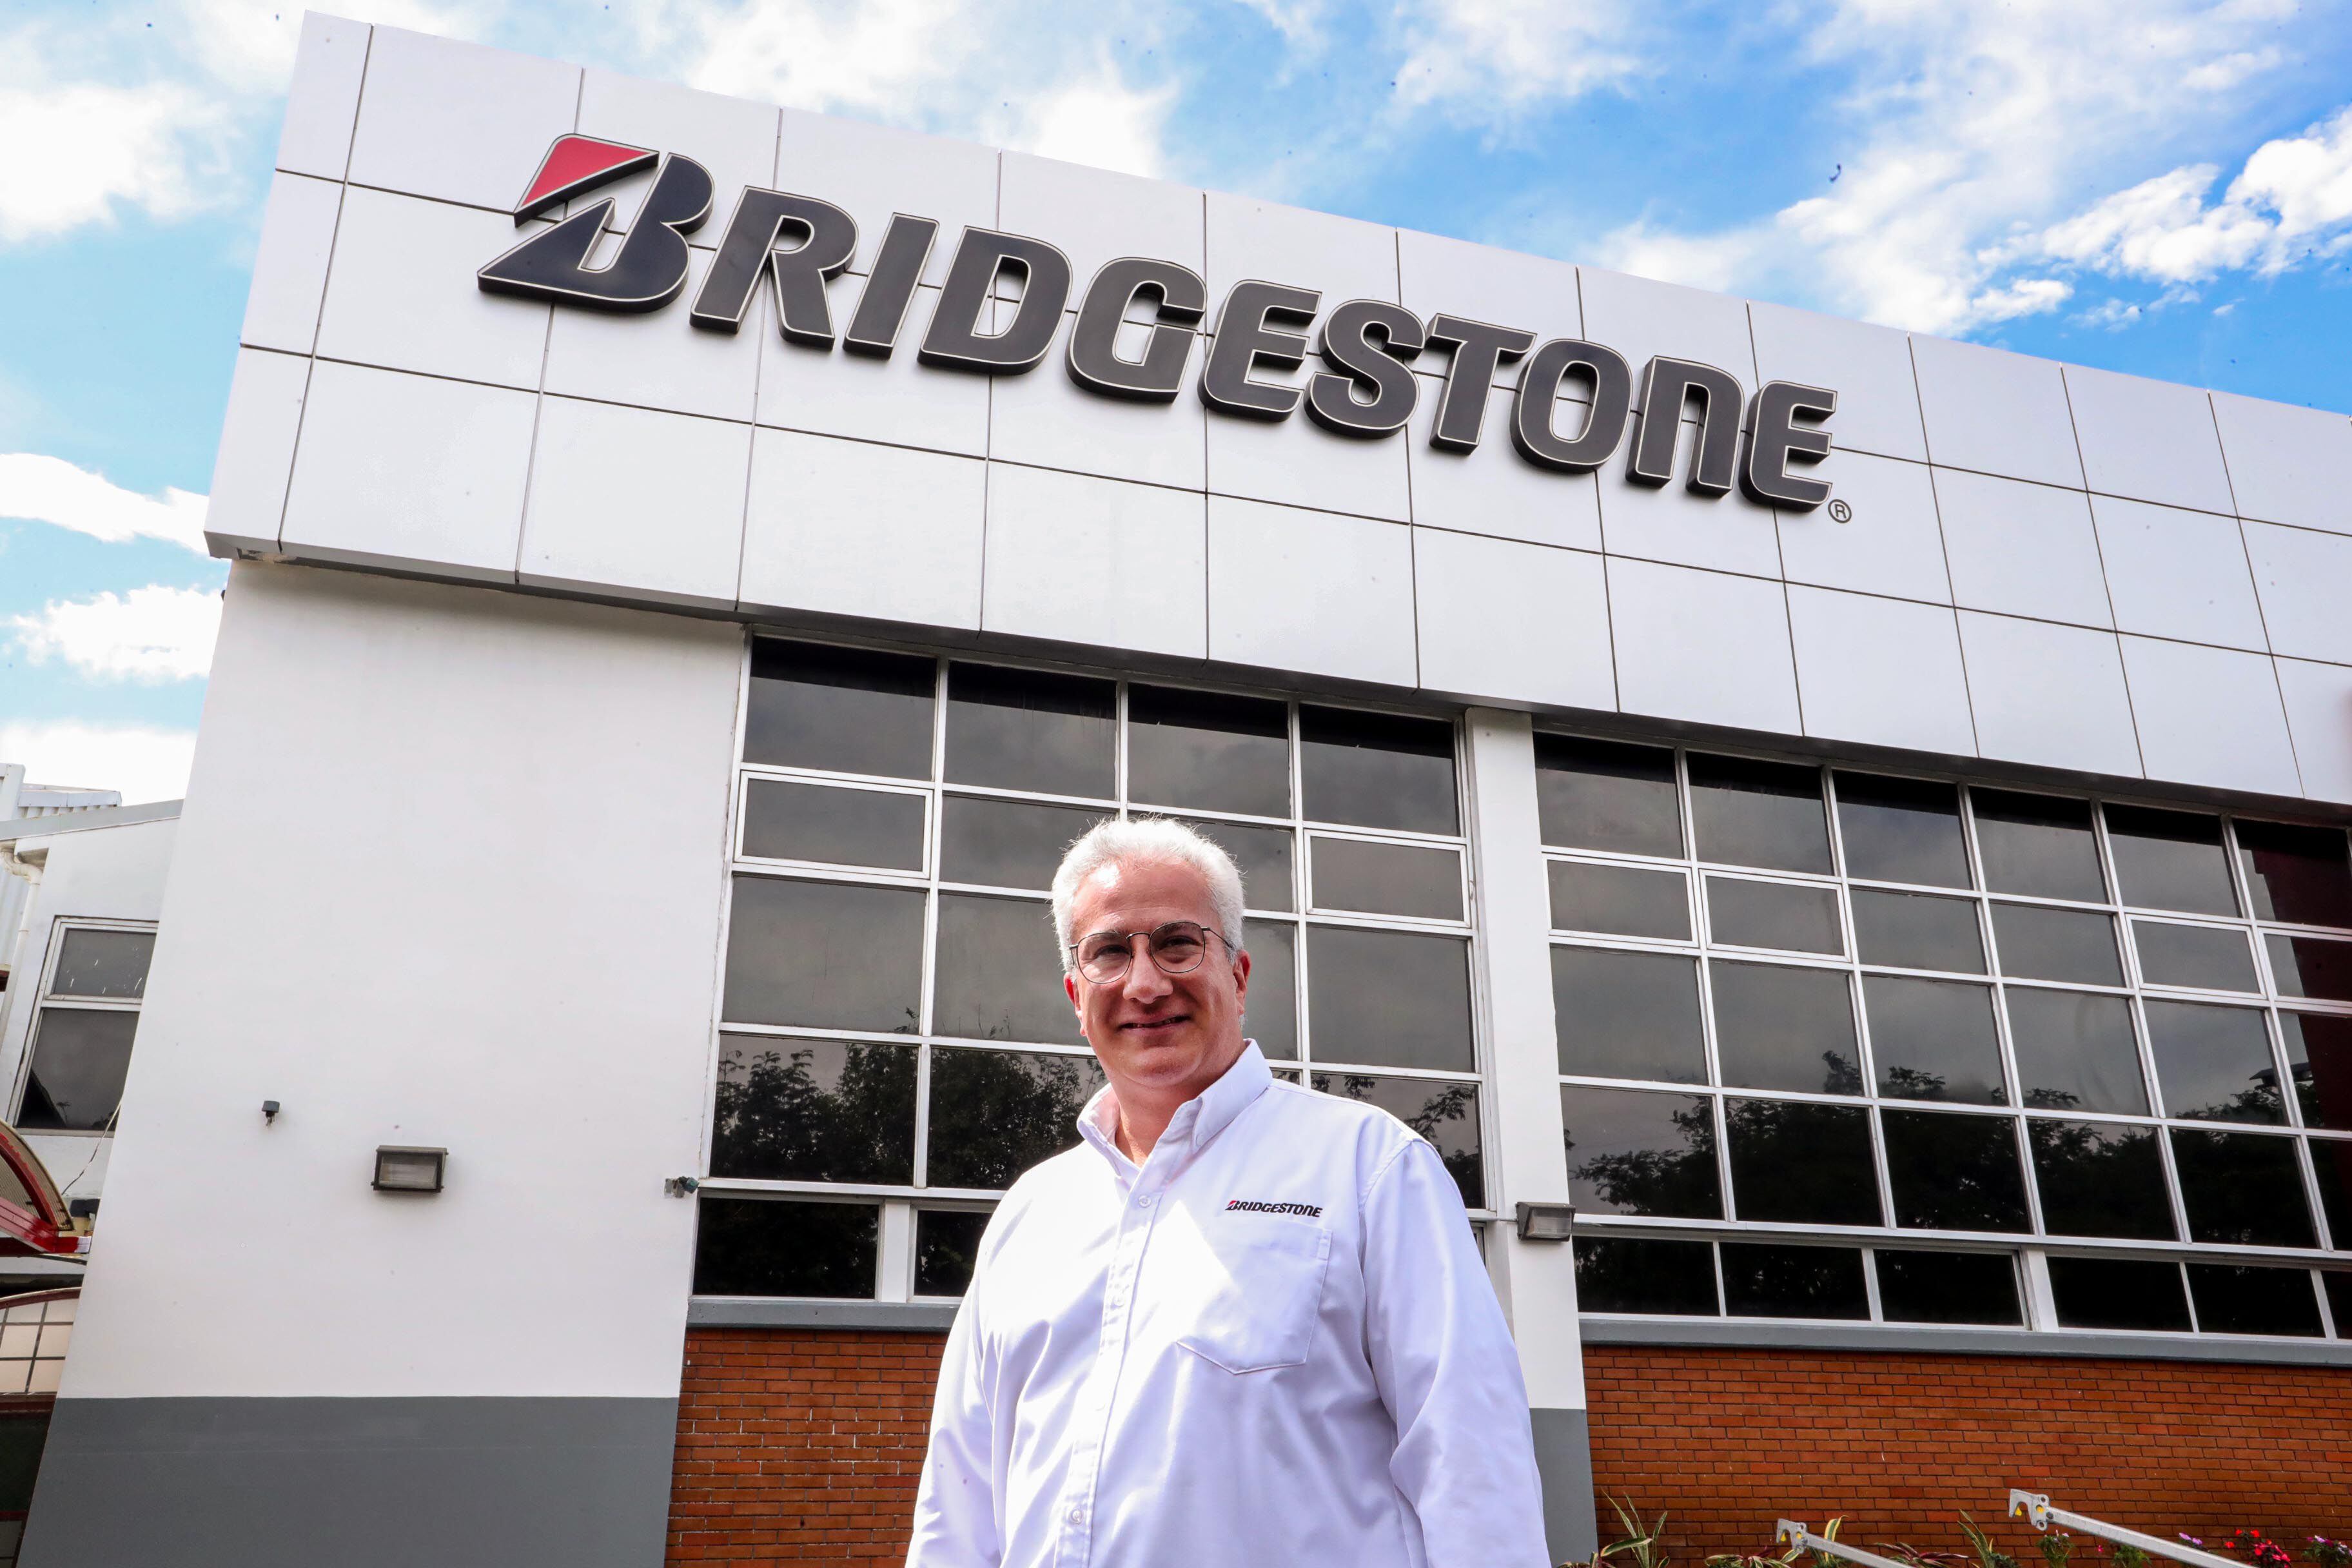 Alfonso Zendejas trabajó en las operaciones de Bridgestone en México, Brasil, Argentina y Estados Unidos. Hoy preside las operaciones para toda la región Latinoamérica Norte. Fotografía: 